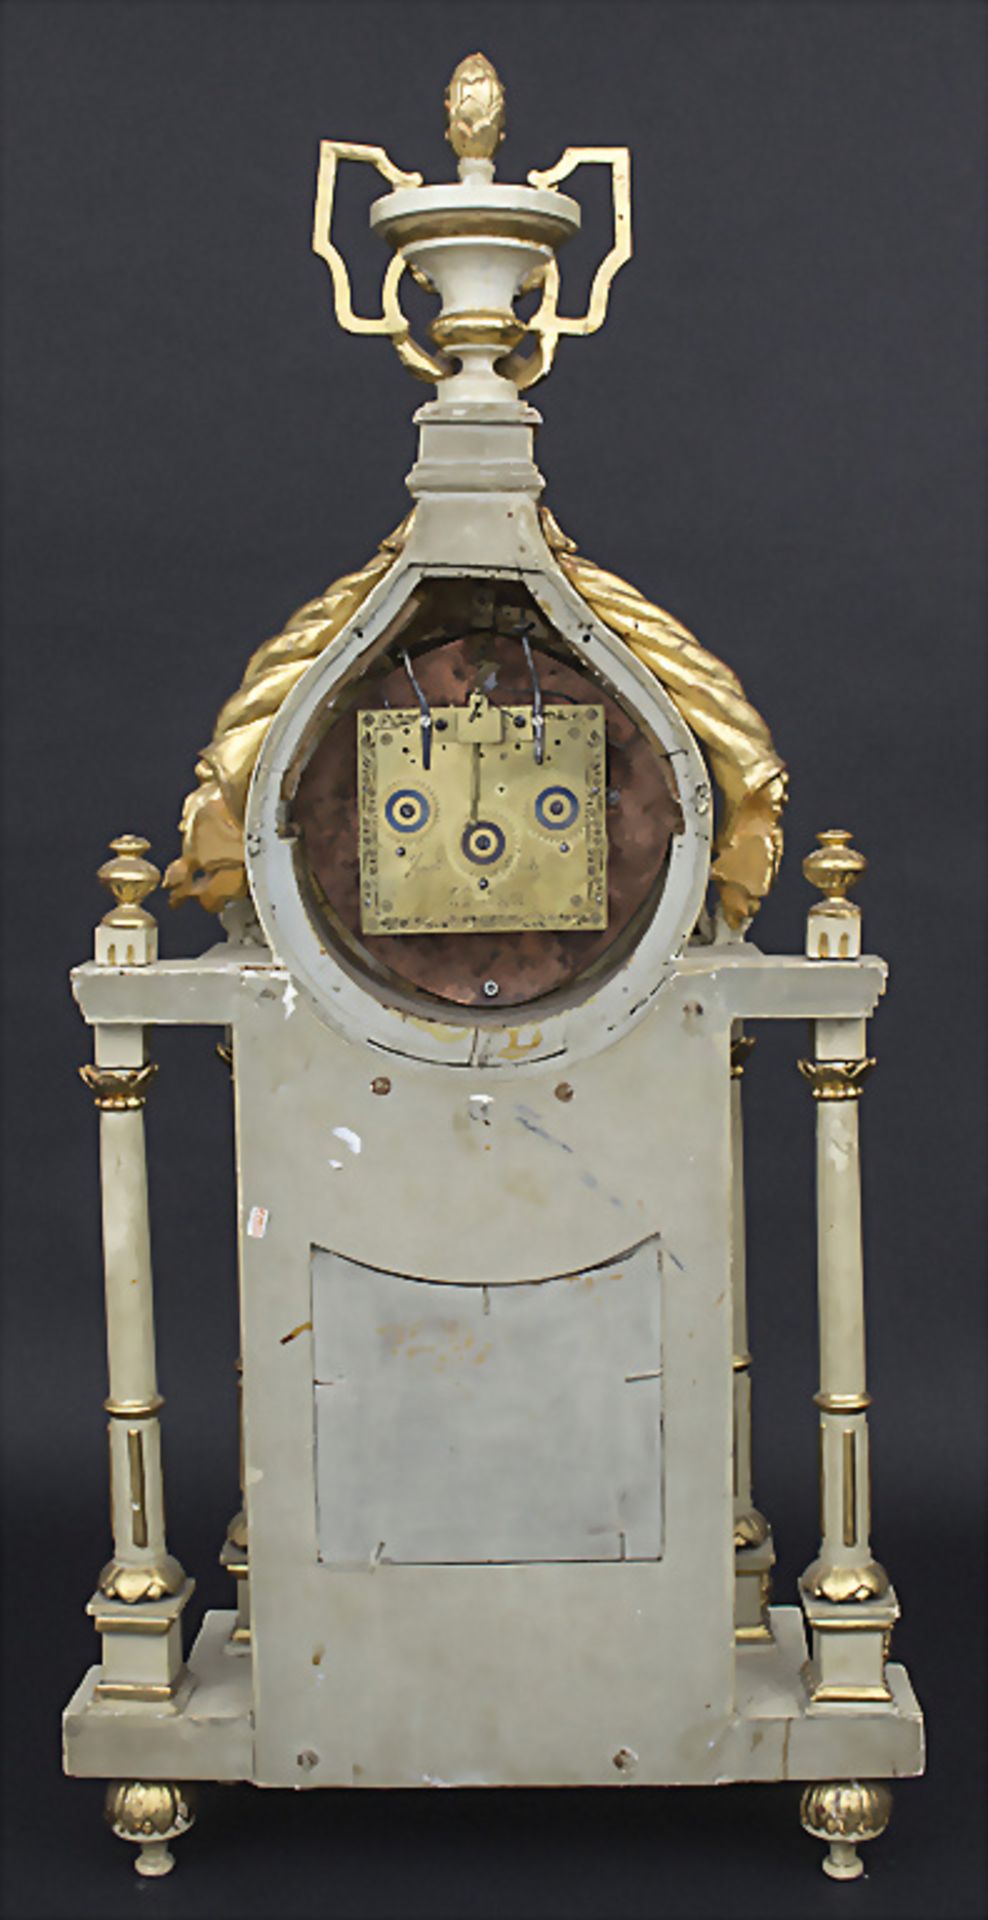 Louis-Seize-Kaminuhr / Louis-Seize mantle Clock, Jocob Scholz, Neumarkt, um 1775 - Bild 3 aus 4